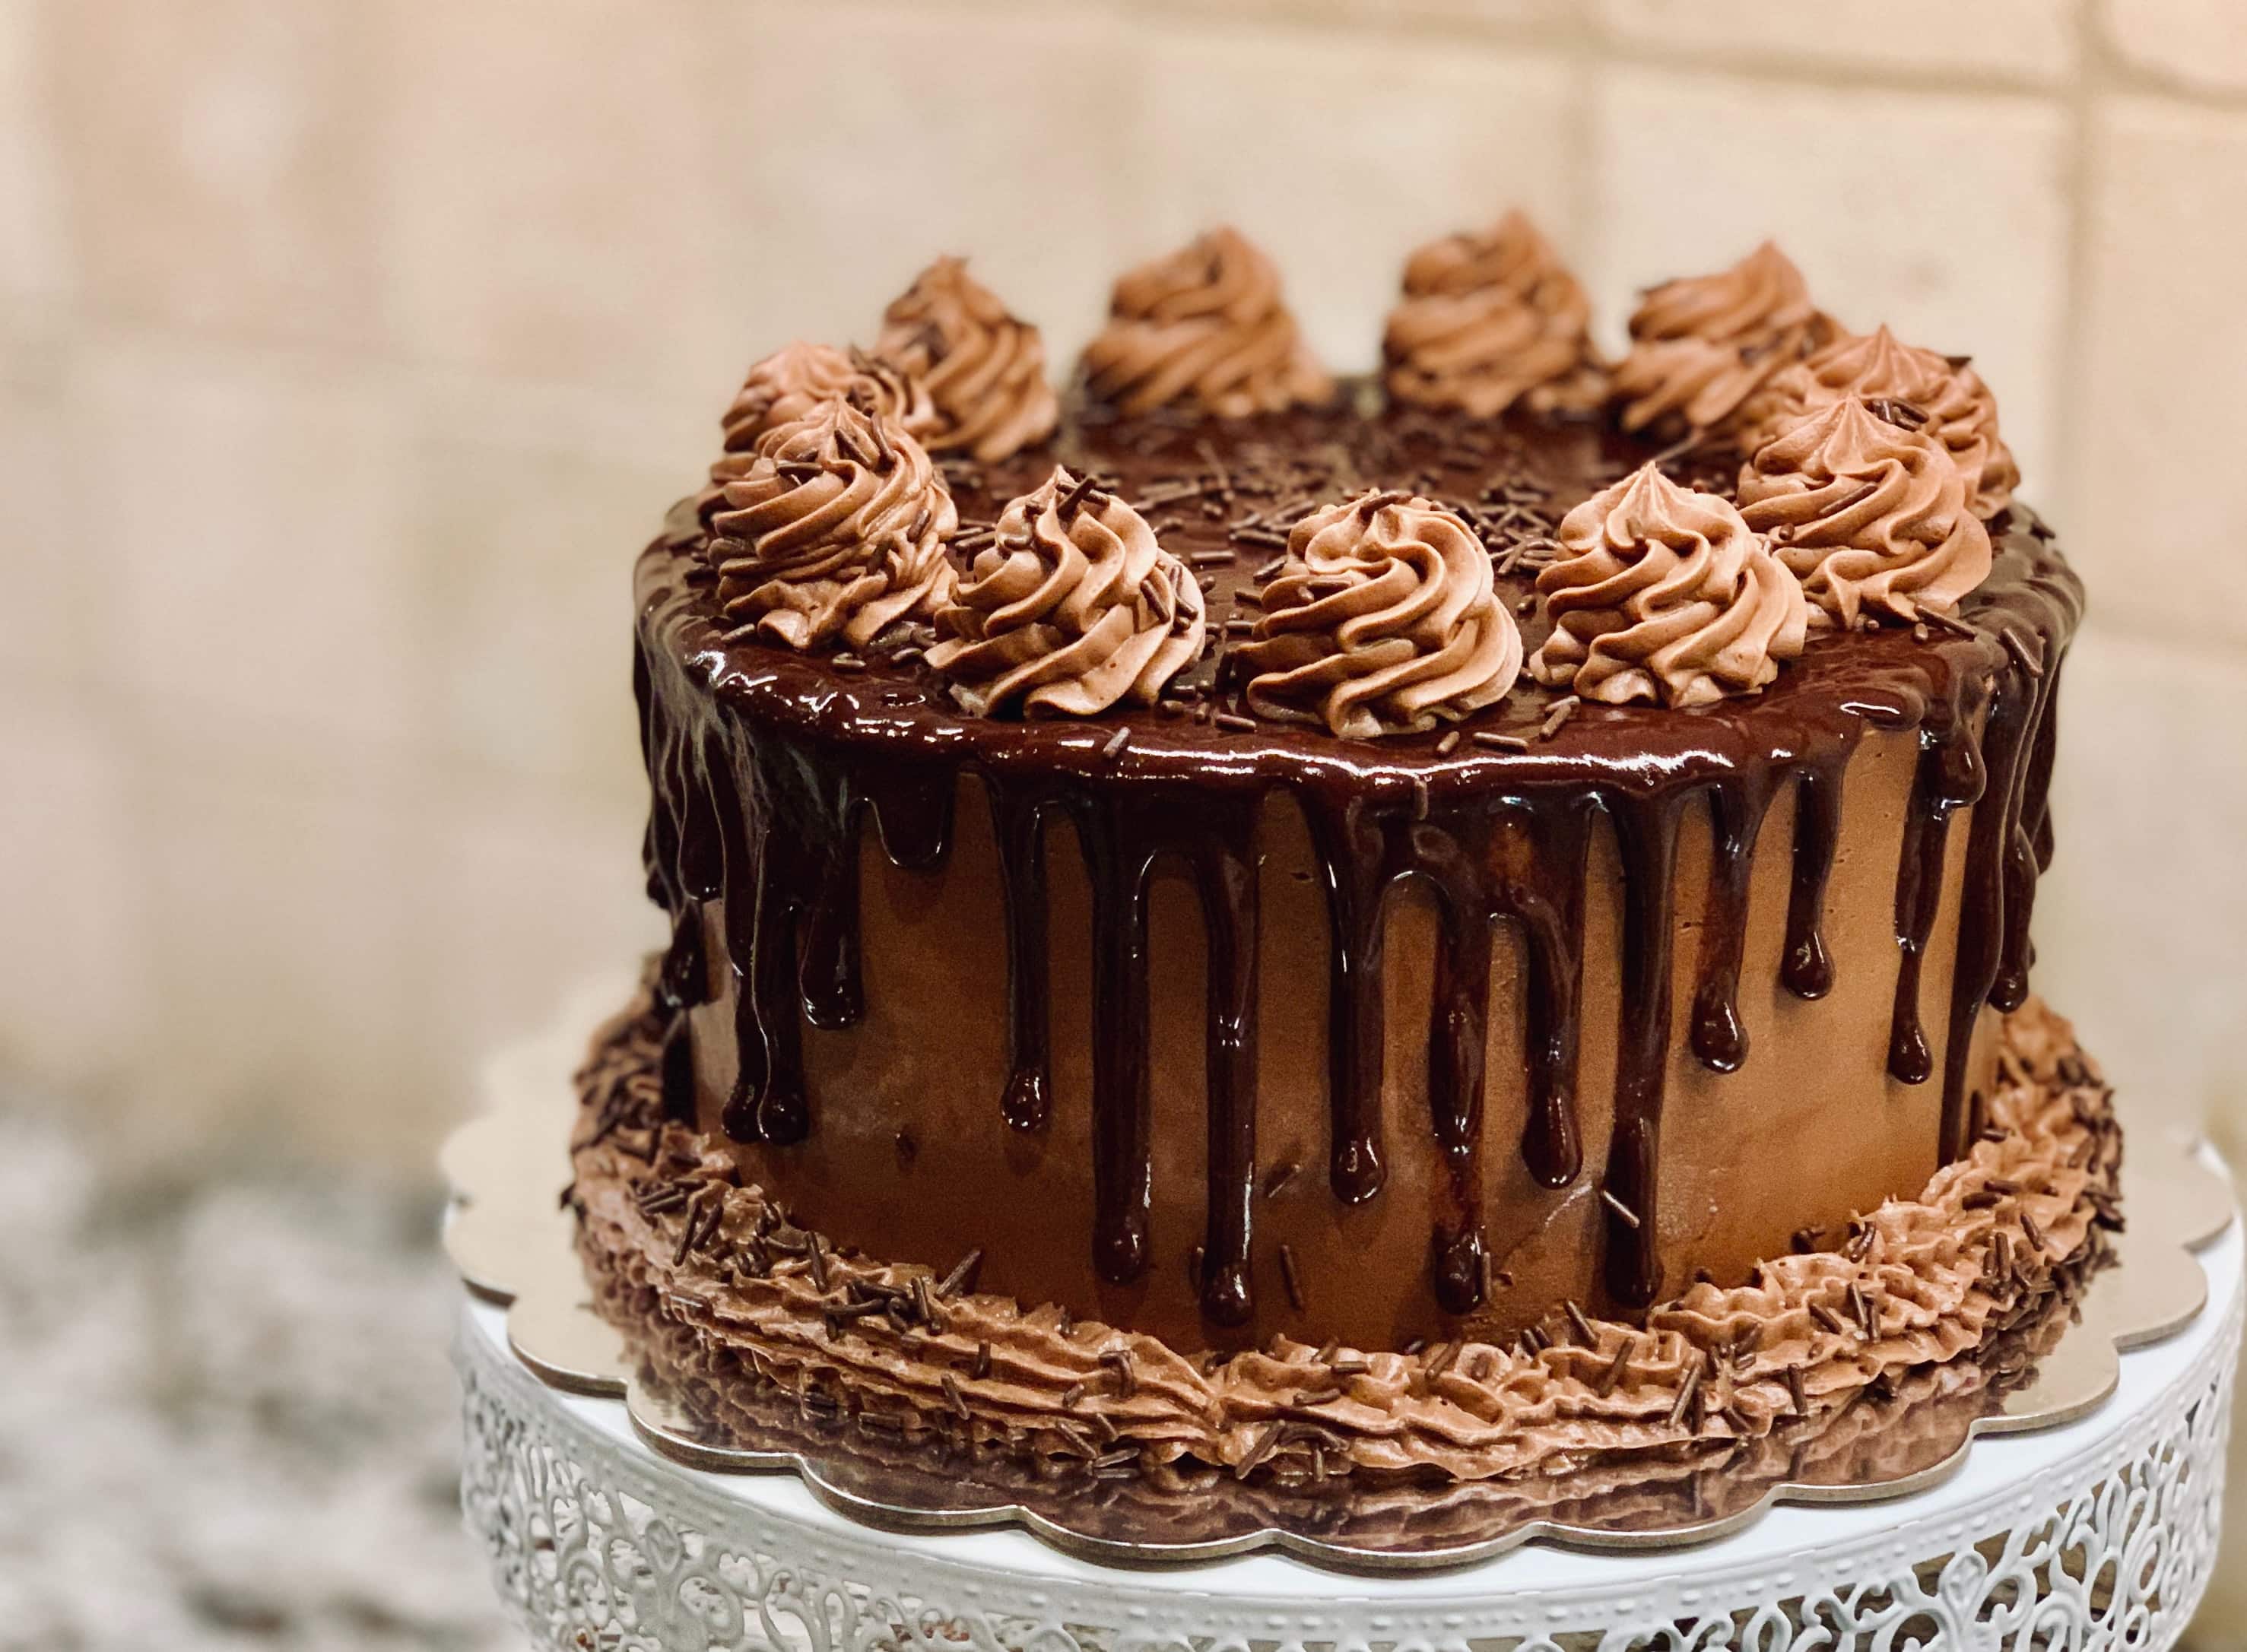 ❤️ Chocolate Shaped Birthday Cake For Bhushan